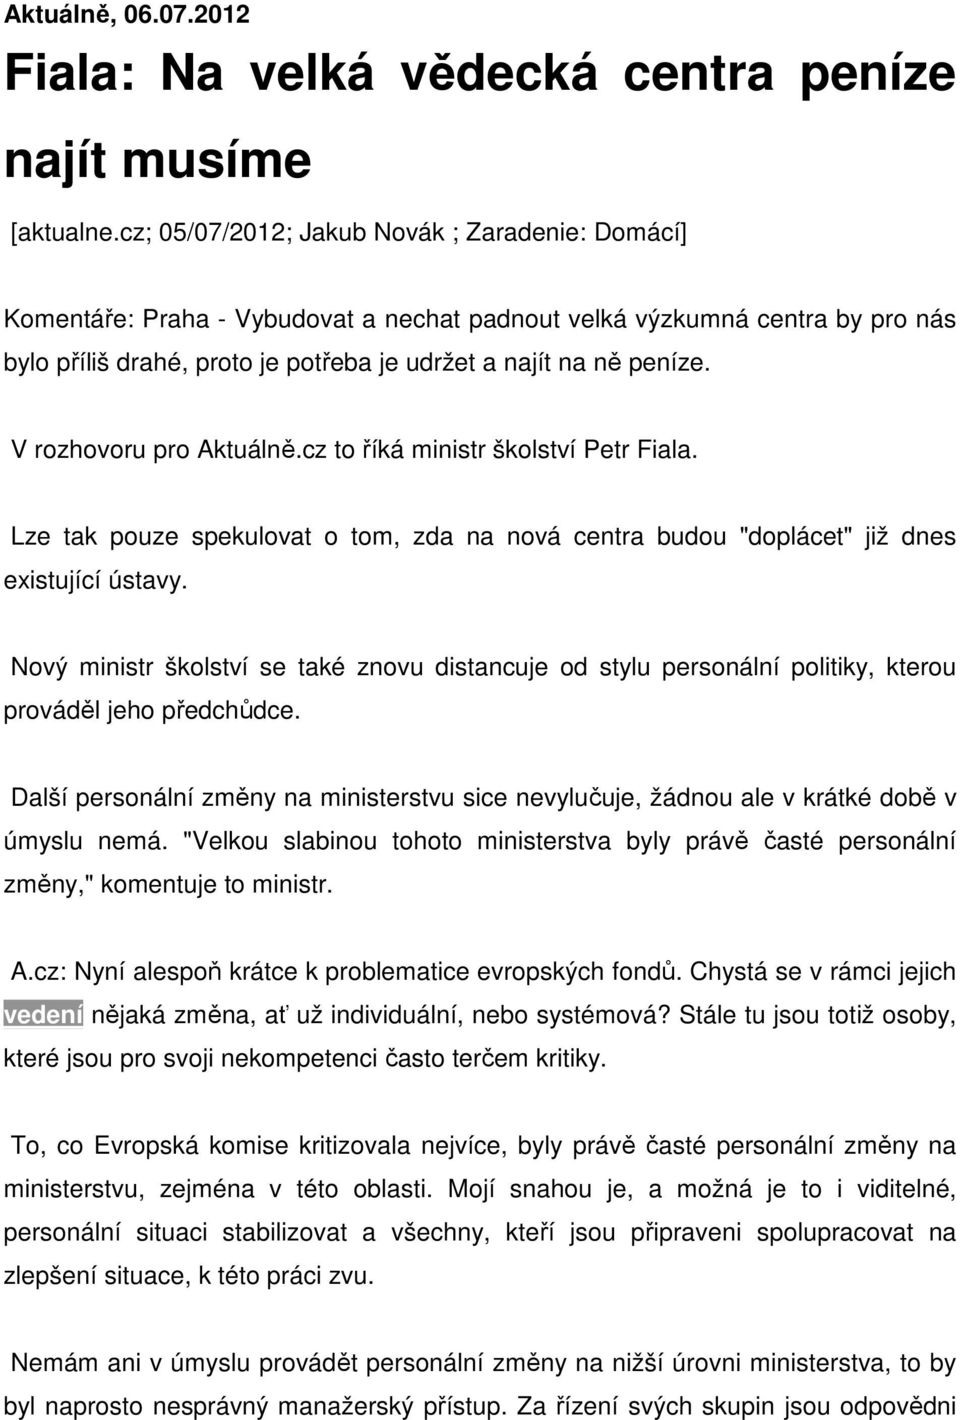 V rozhovoru pro Aktuálně.cz to říká ministr školství Petr Fiala. Lze tak pouze spekulovat o tom, zda na nová centra budou "doplácet" již dnes existující ústavy.